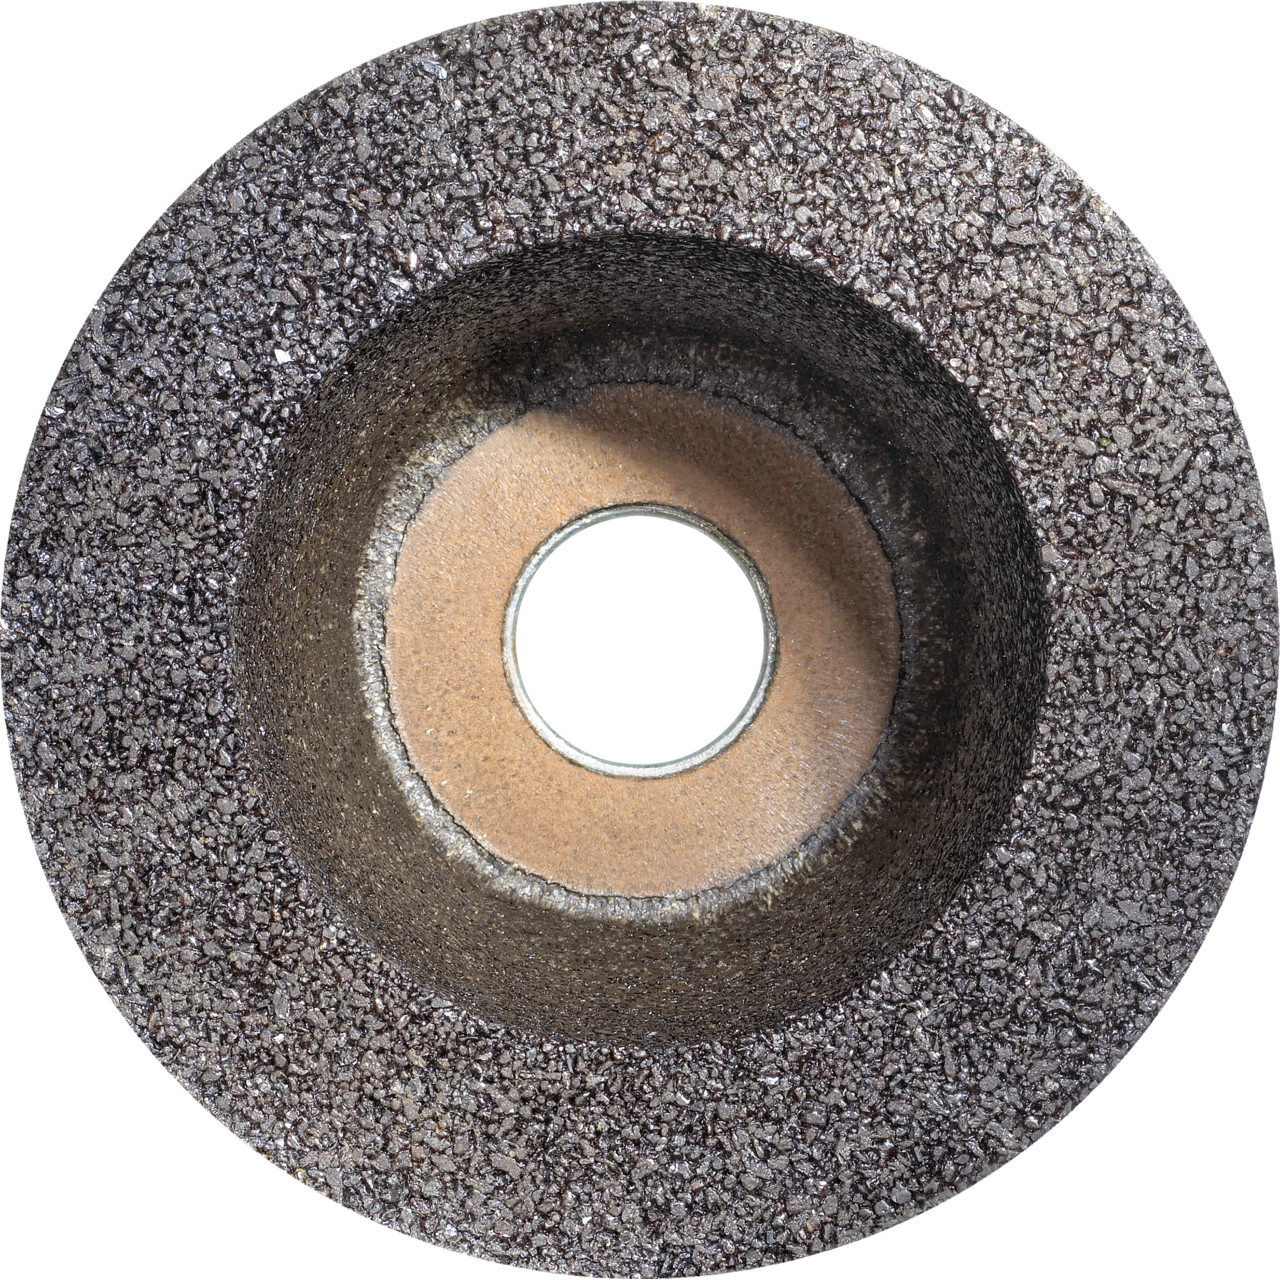 Tazza in resina sintetica Tyrolit D/JxDxH 110/90x55x22,23 Per pietra, forma: ruota a tazza 11BT, Art. 314463